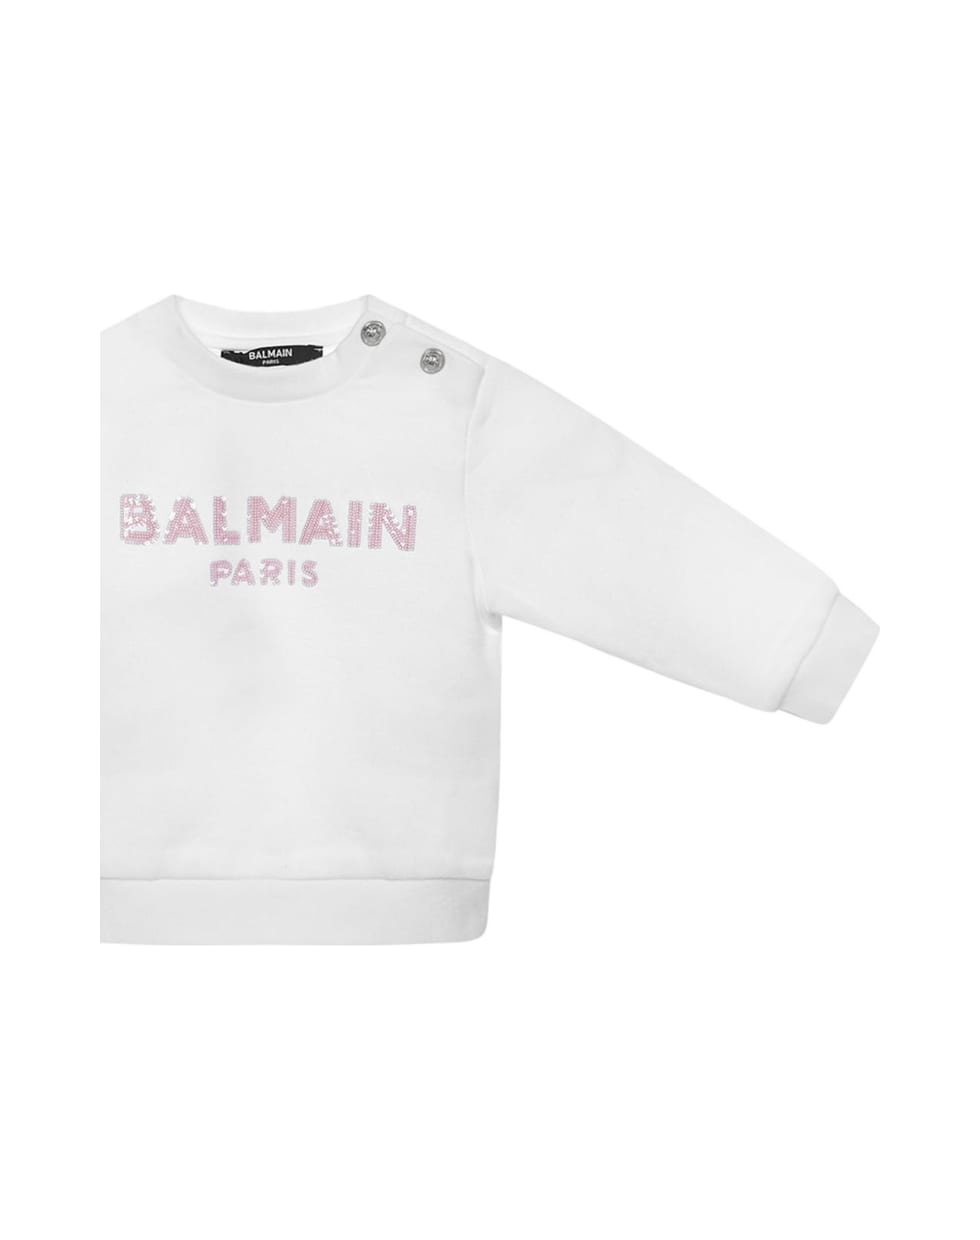 Balmain Sweatshirt - White